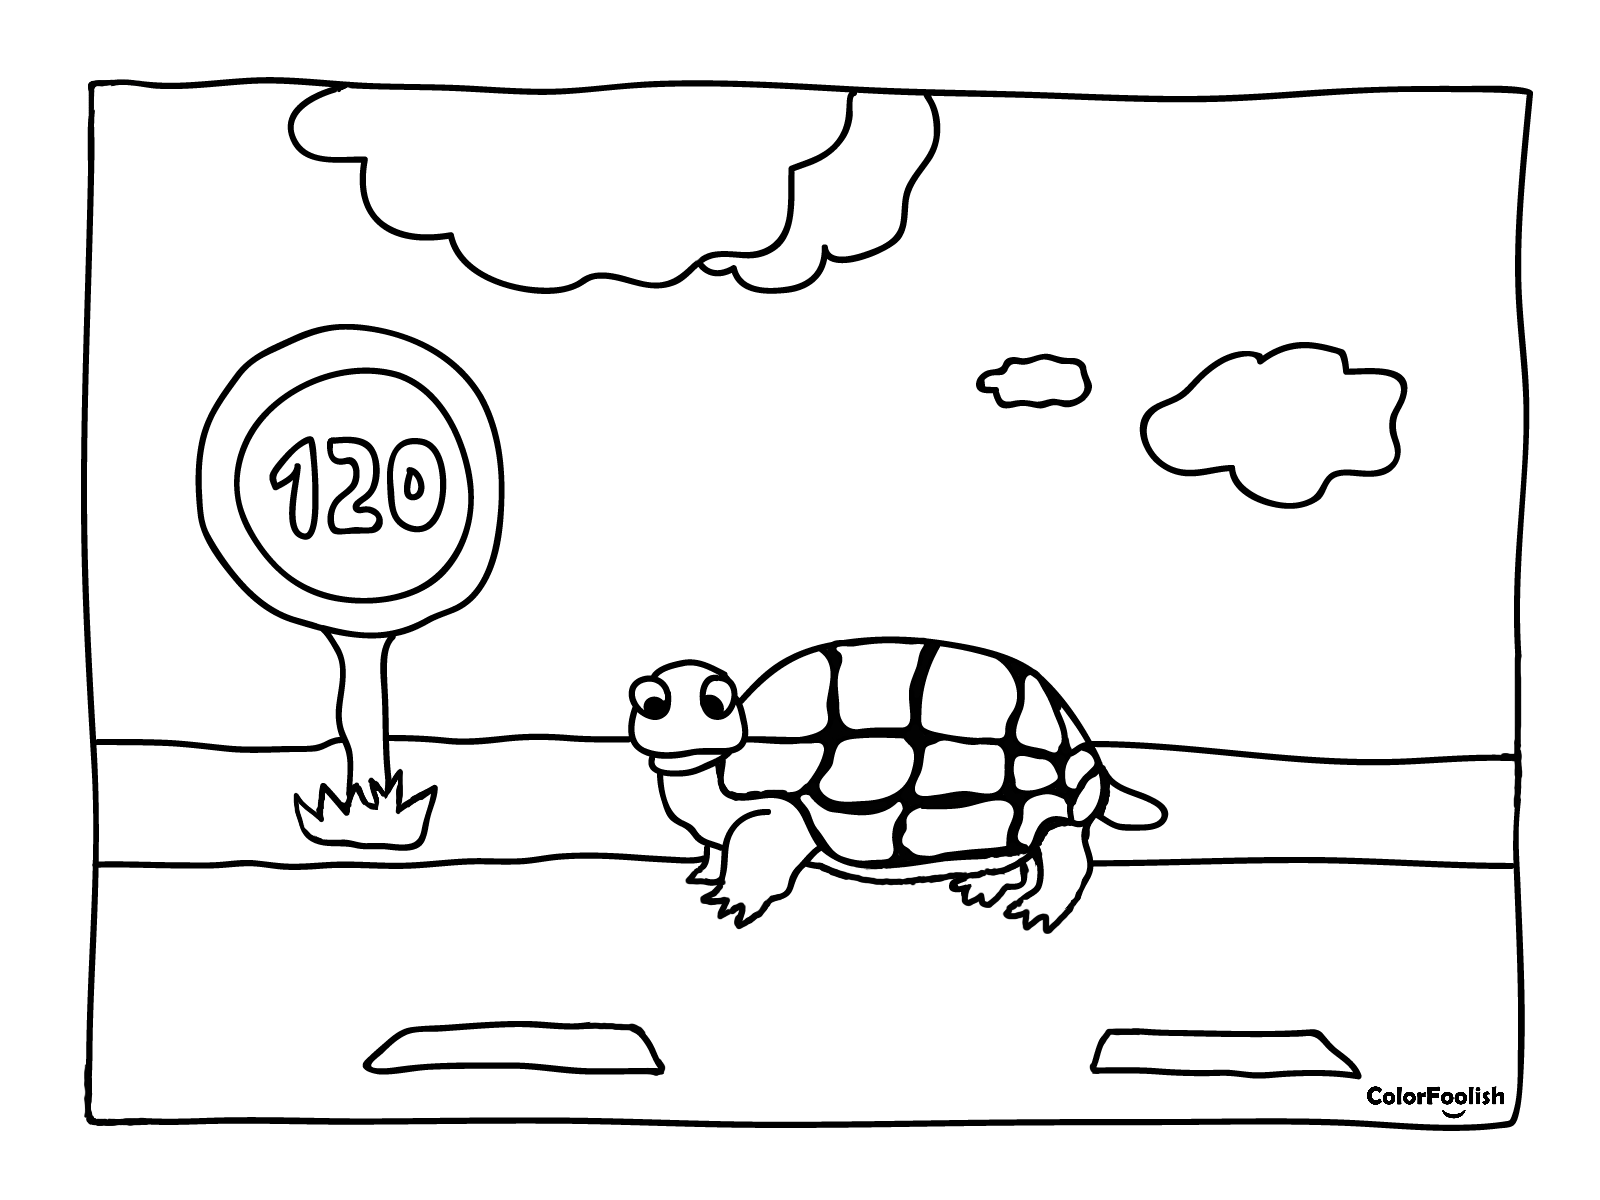 Halaman mewarnai kura-kura di bawah batas kecepatan